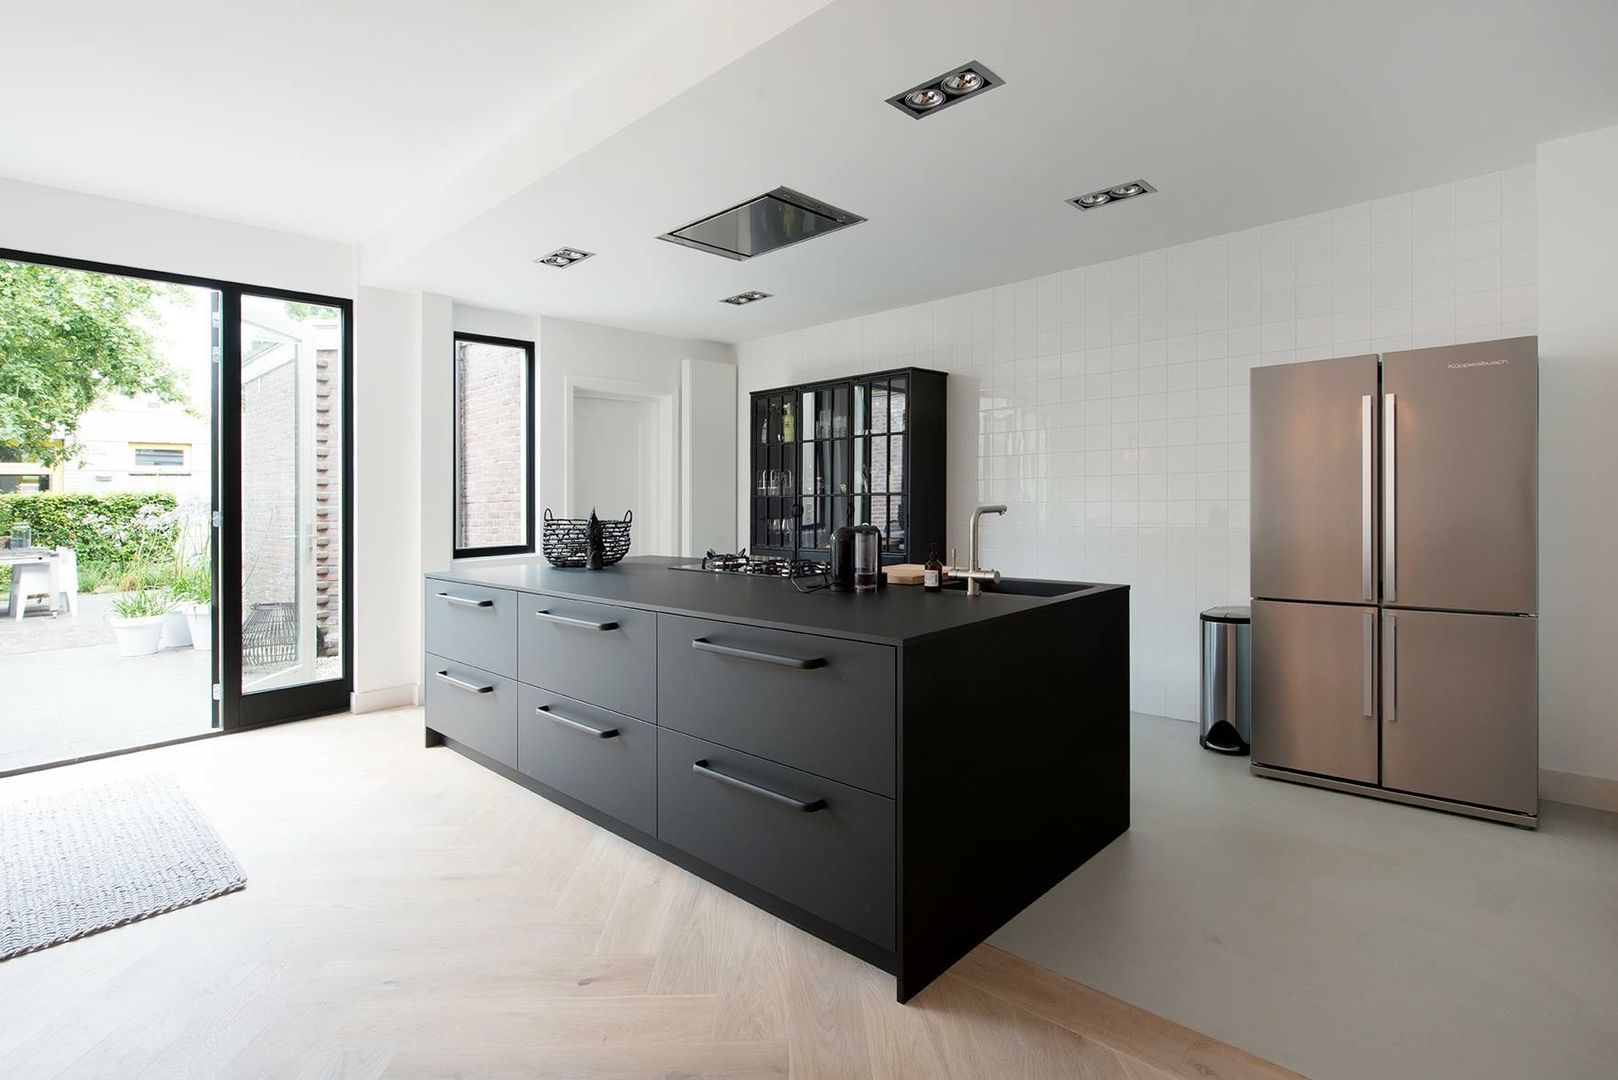 Keuken jaren 30 woning, Studio'OW Interieurontwerp Studio'OW Interieurontwerp Modern style kitchen